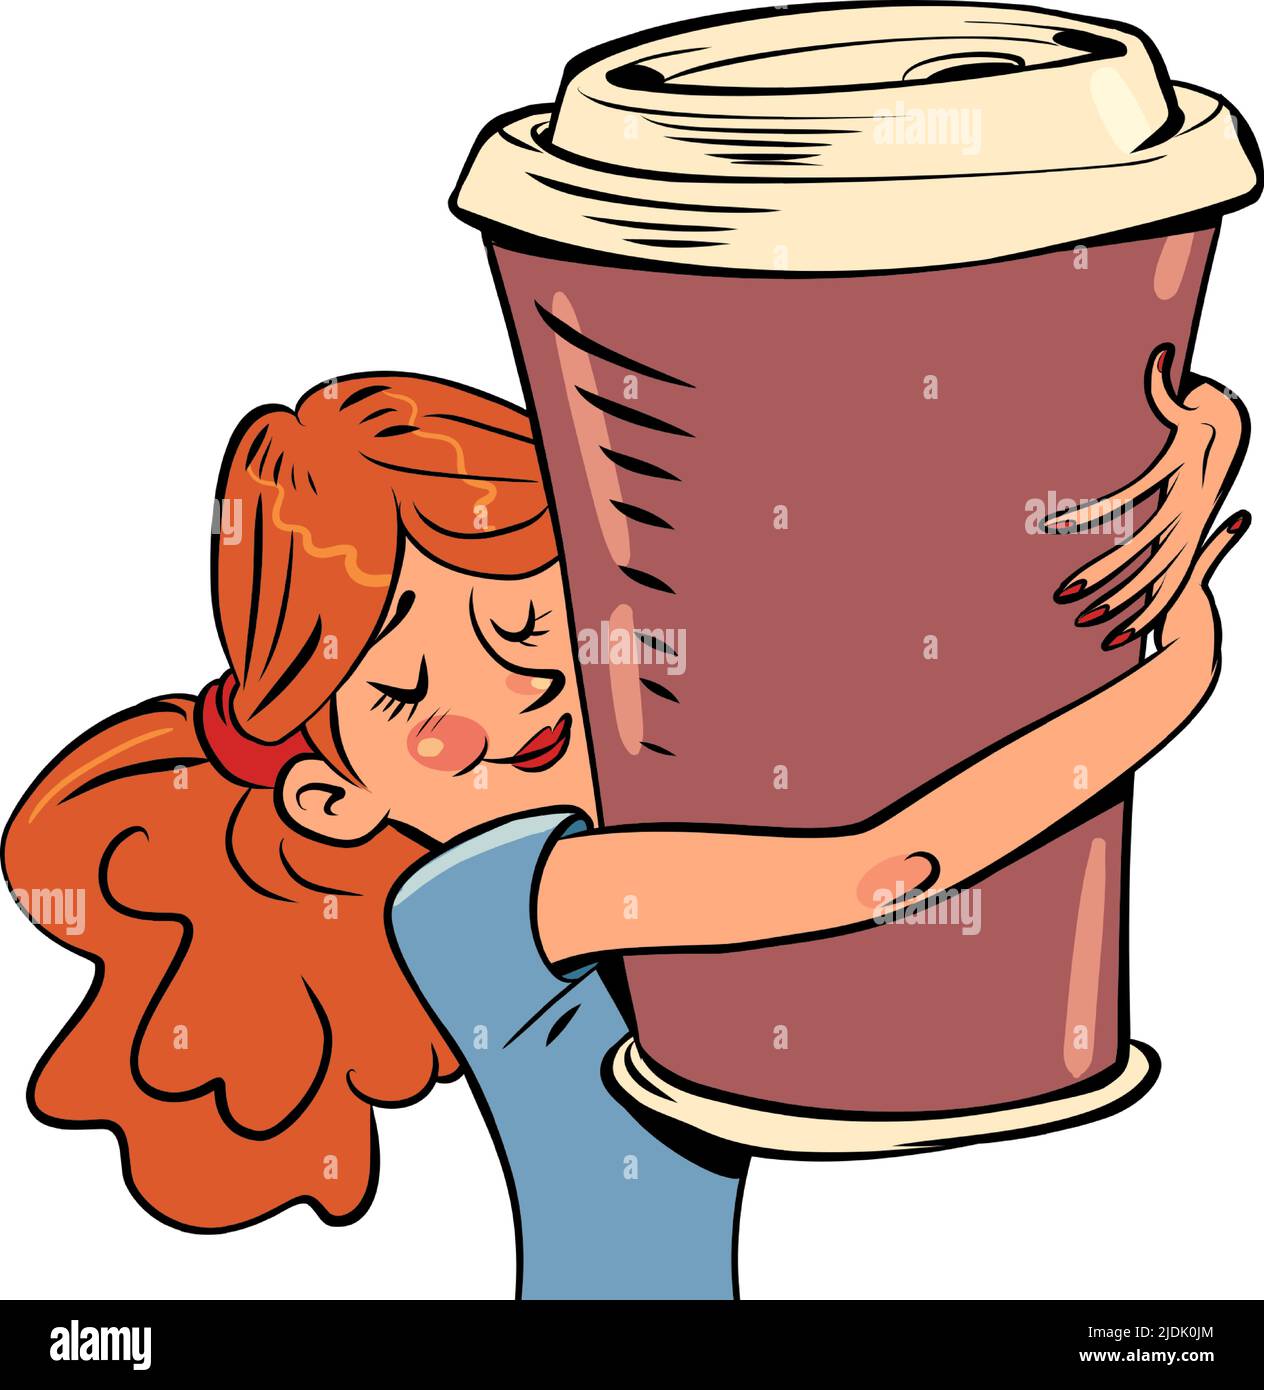 una mujer joven abraza una taza enorme de café, un desayuno de la mañana, una bebida alegre. Ilustración de dibujo a mano retro de cómic Ilustración del Vector